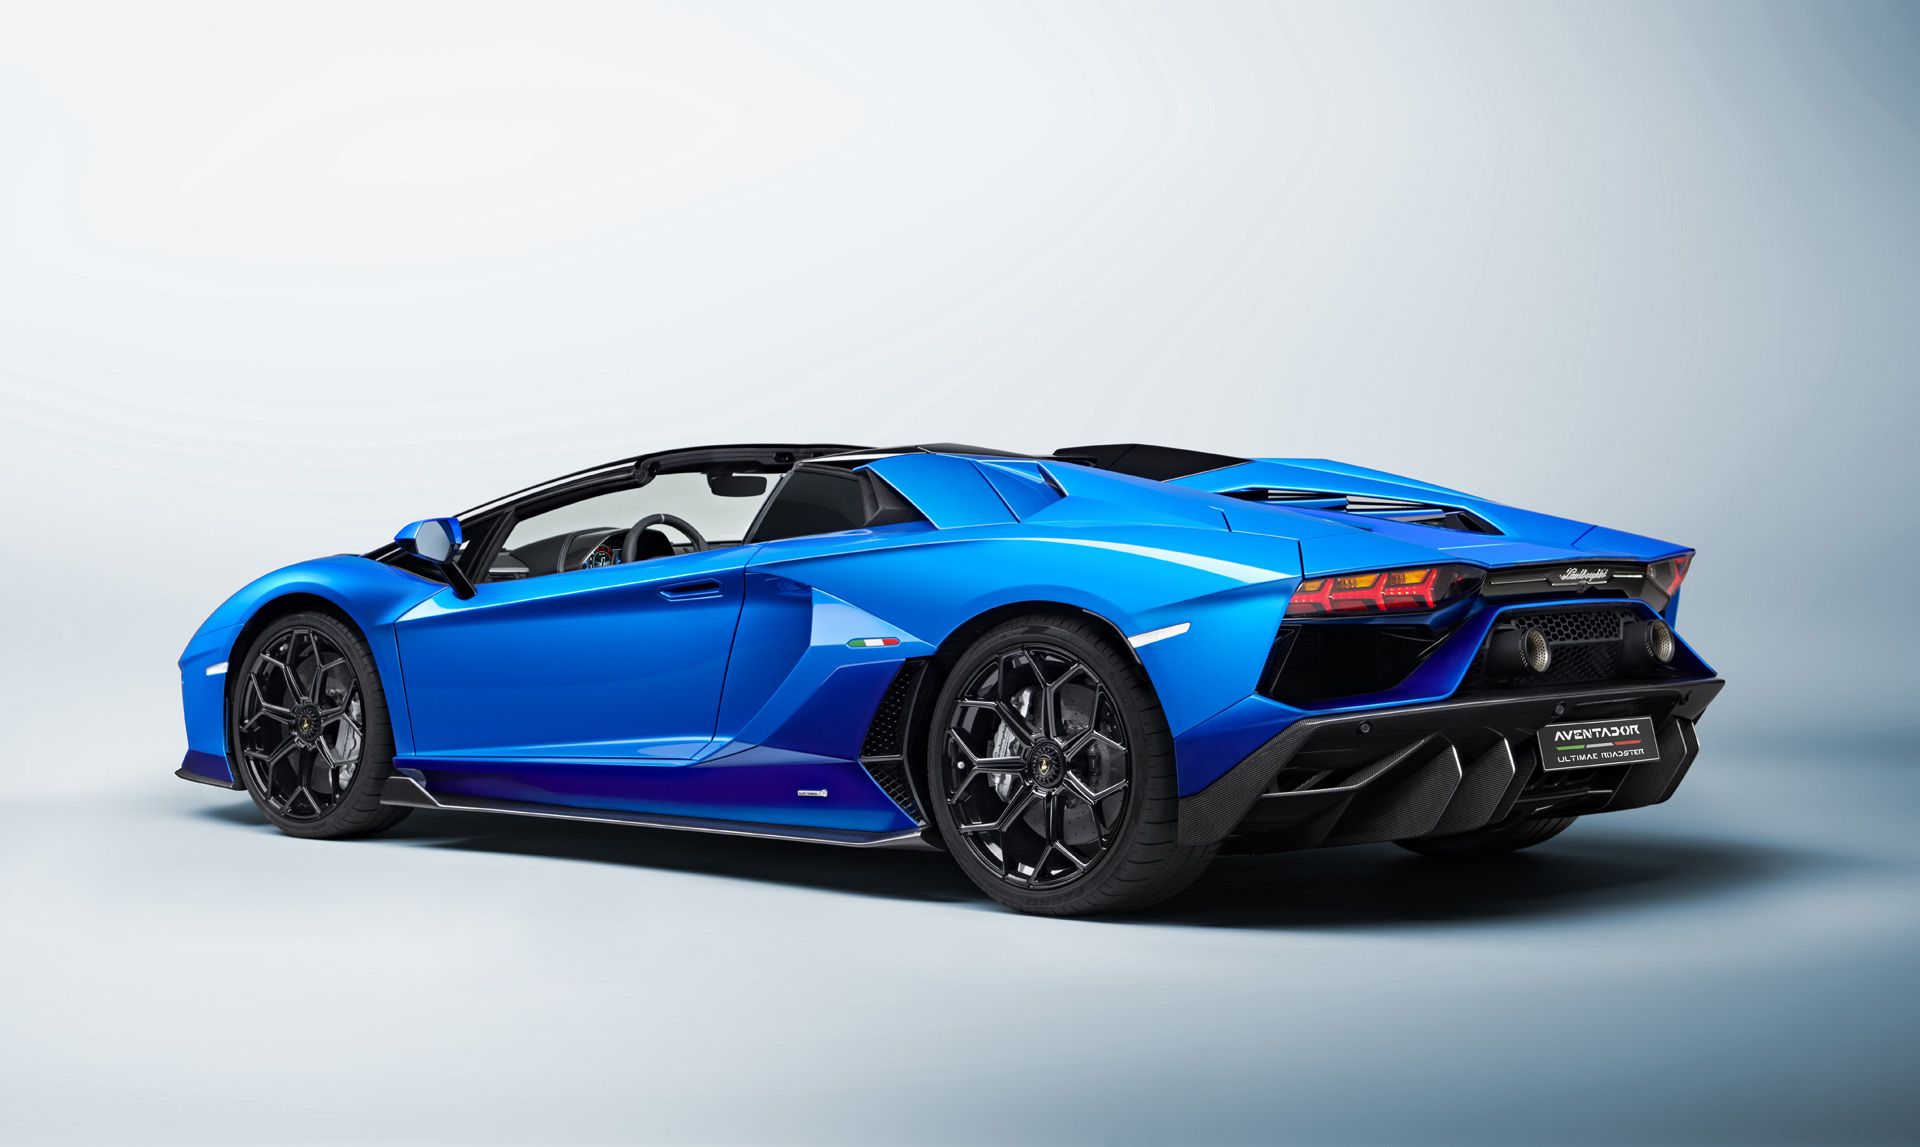 نمای پشت Lamborghini Aventador Ultimate  لامبورگینی اونتادور اولتیمای